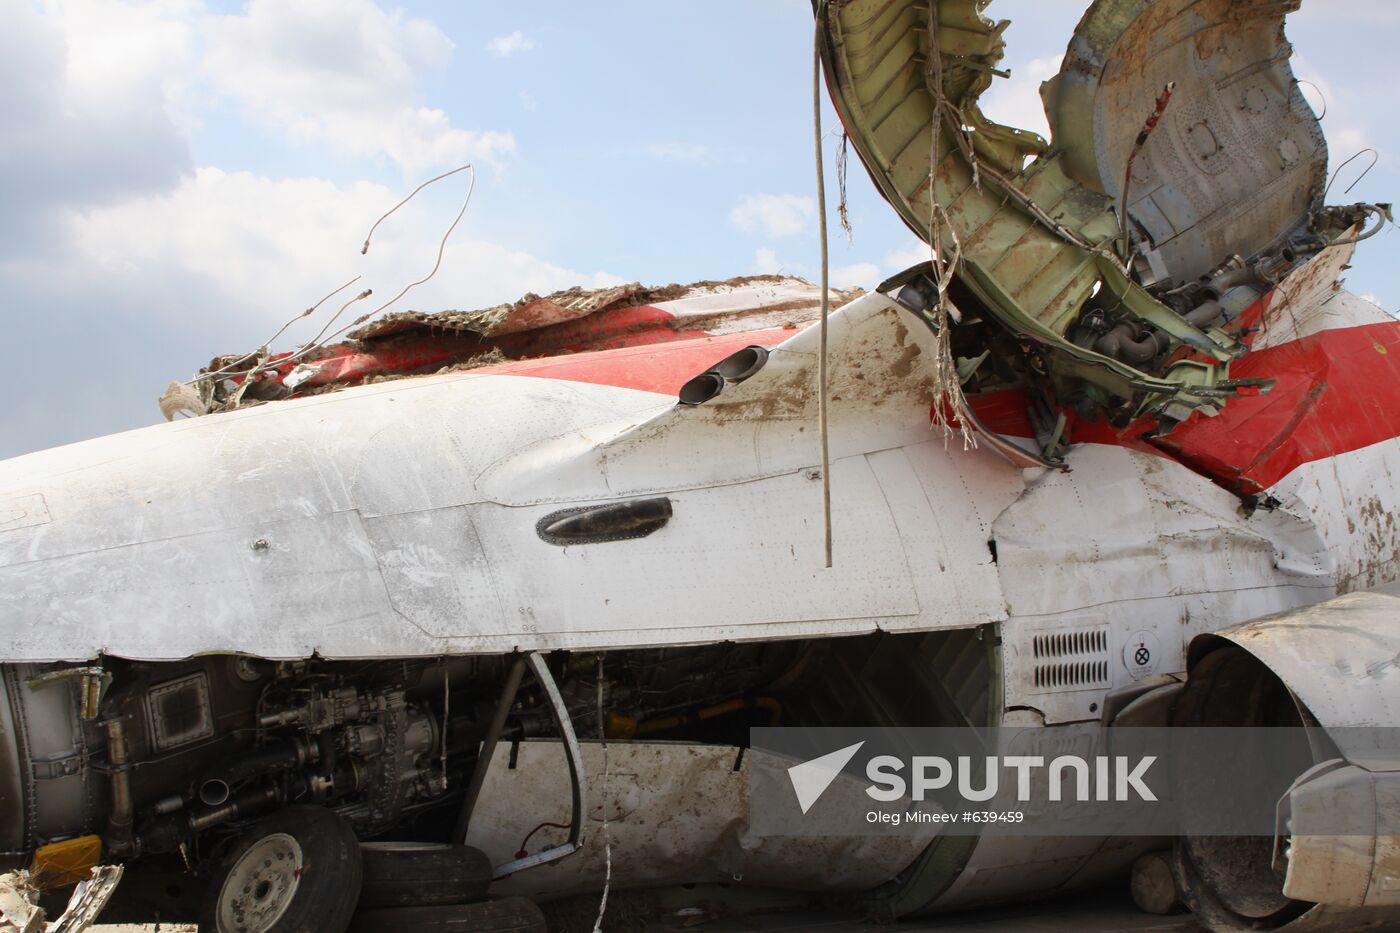 Lech Kaczyński's Tu-154 aircraft debris at Smolensk airfield